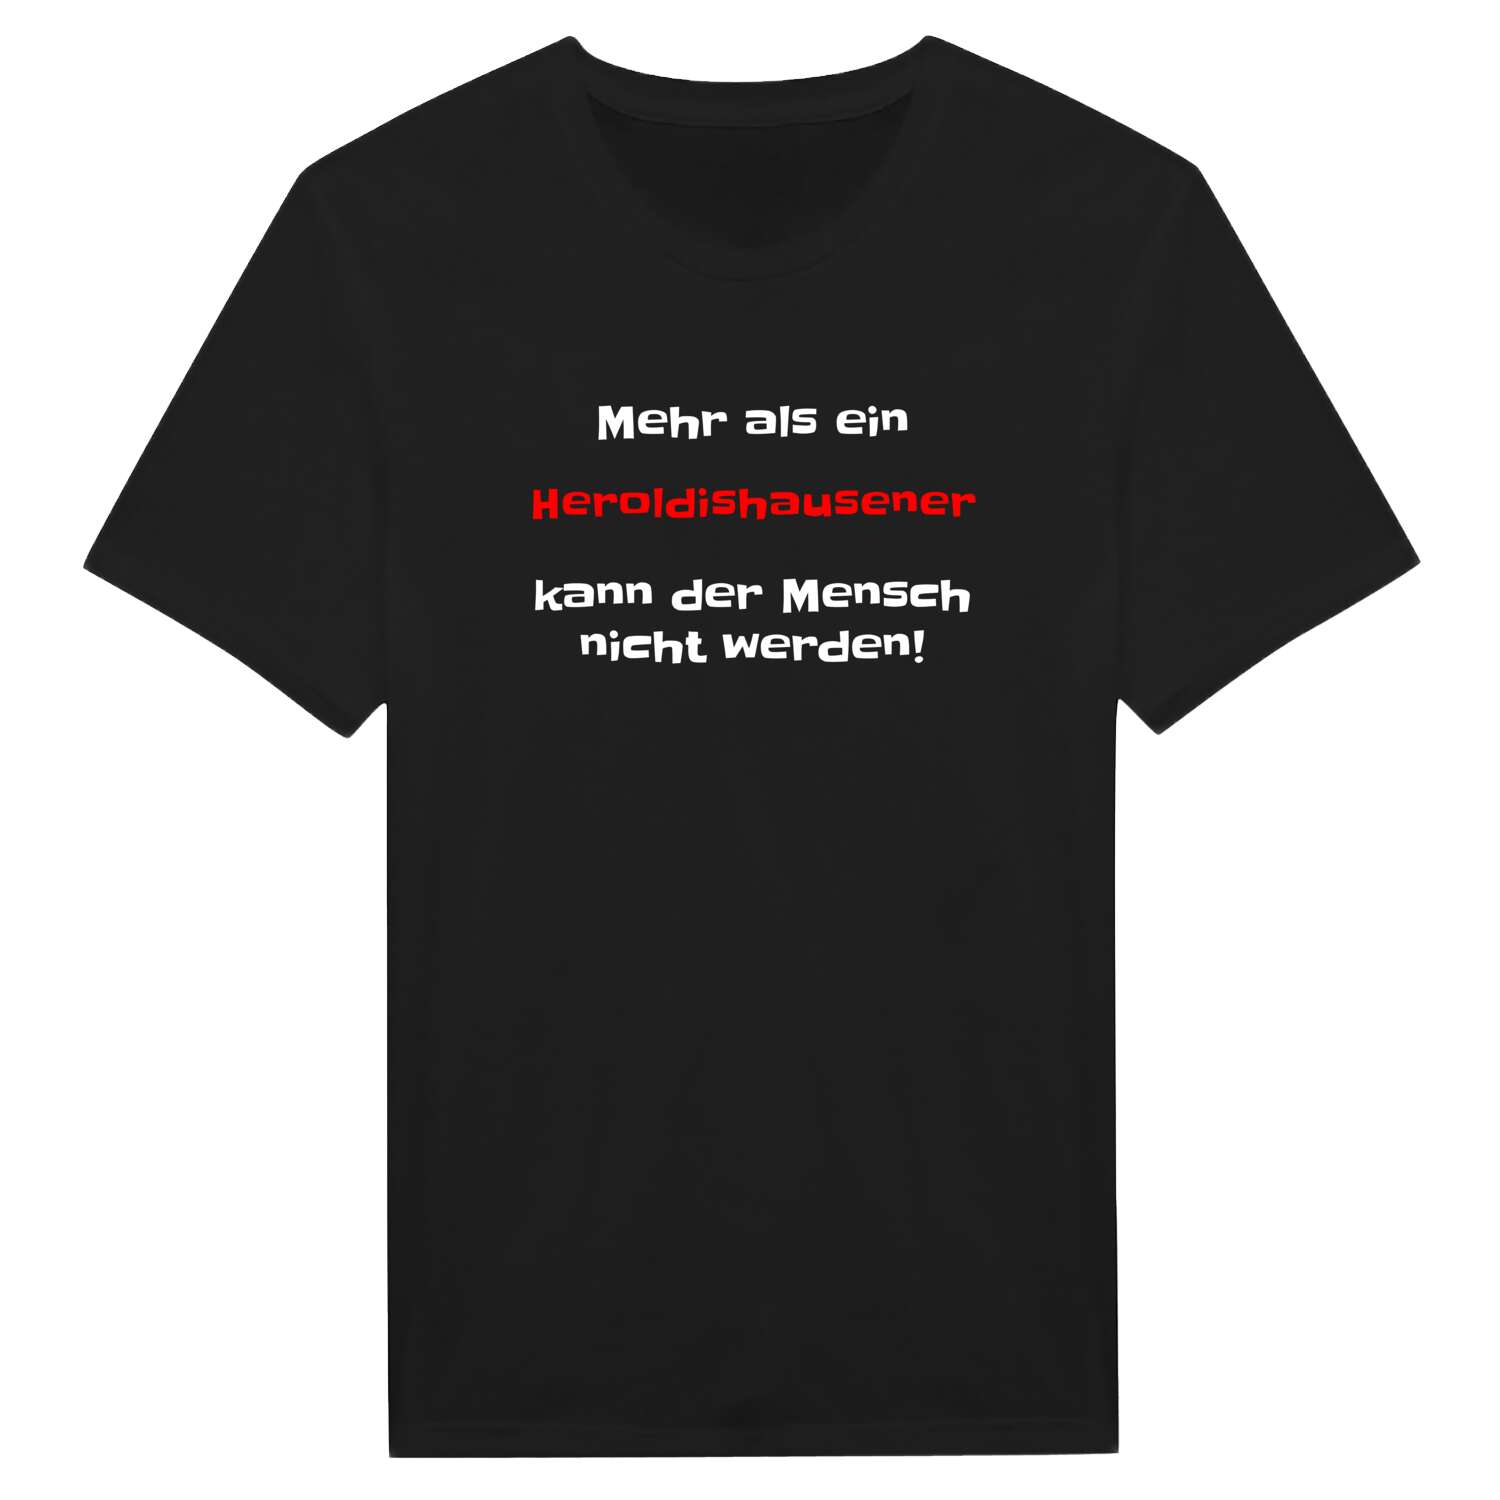 Heroldishausen T-Shirt »Mehr als ein«